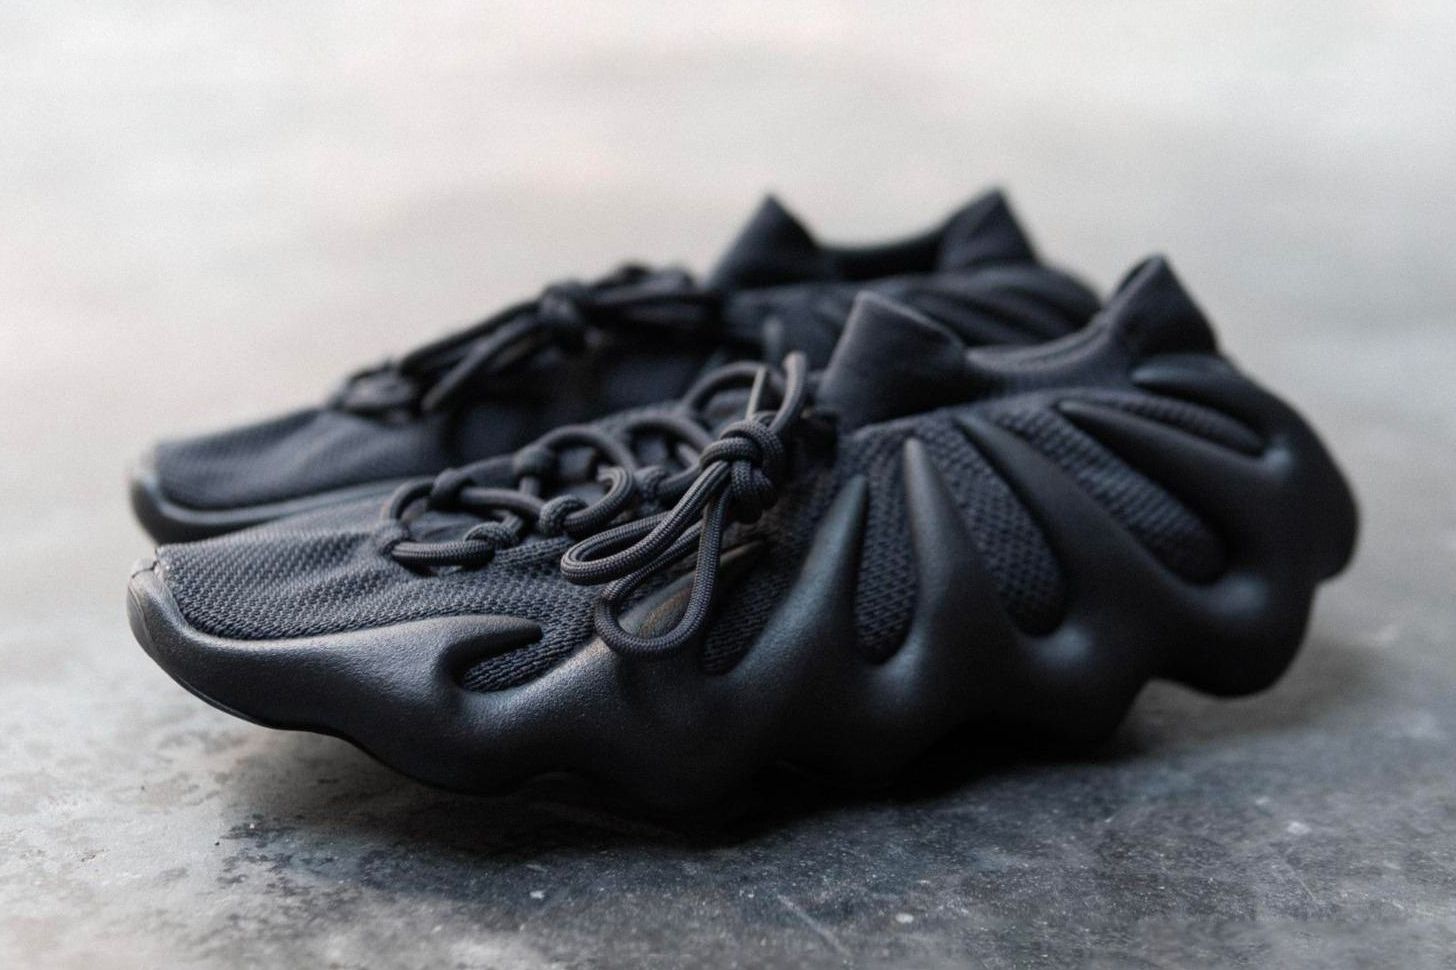 Adidas Yeezy 450 Utility Black: Podniesienie Poziomu Twojej Gry Sneakersowej